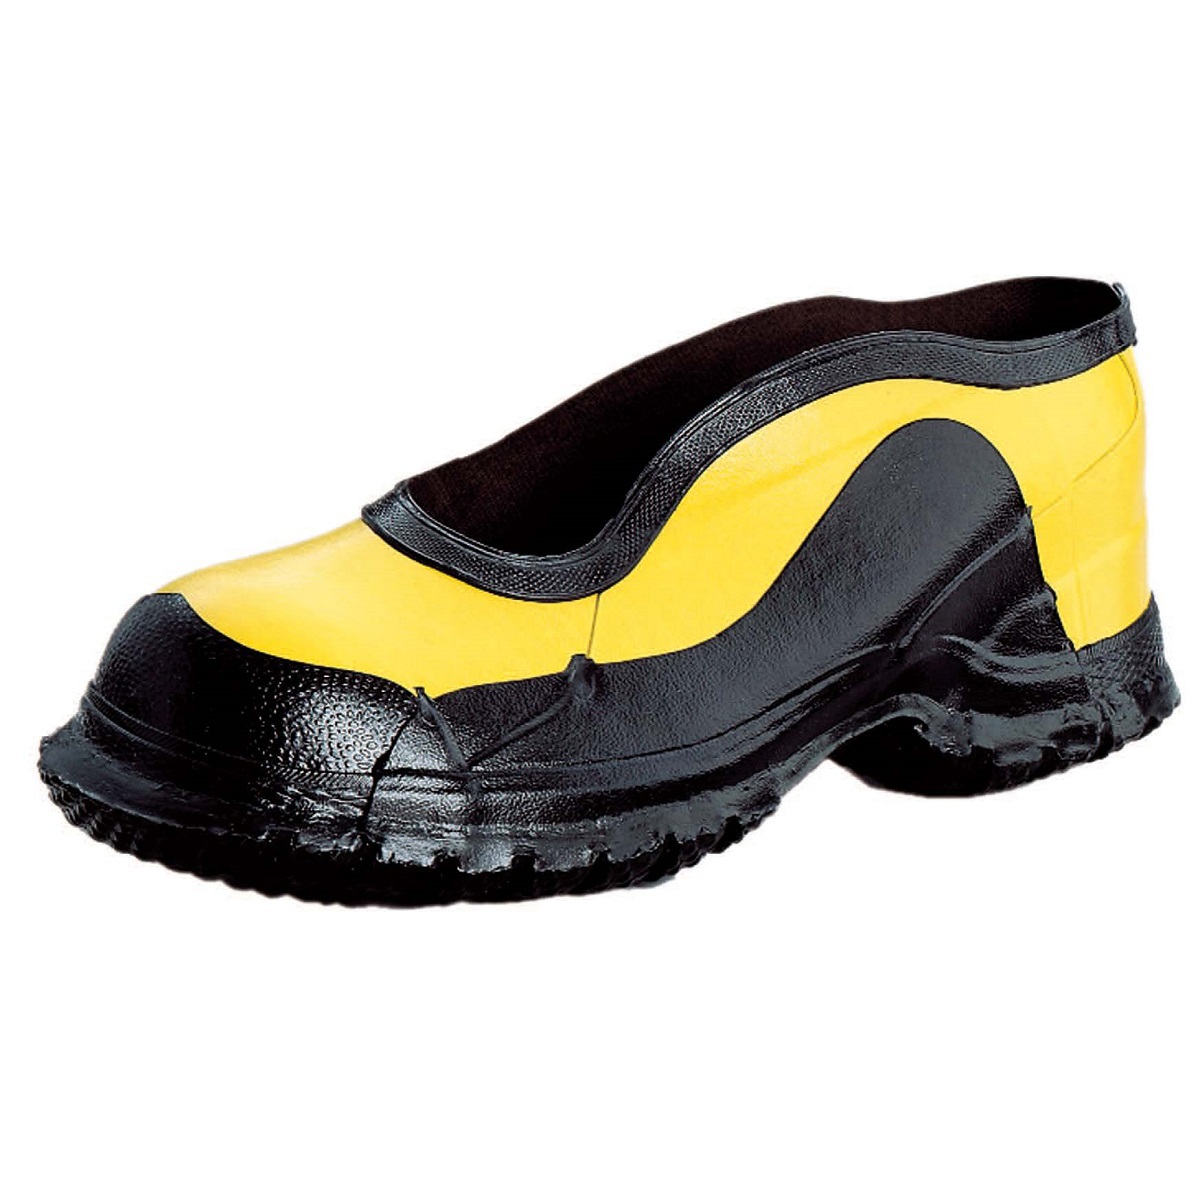 Honeywell Size 12 Salisbury Black/Yellow Rubber No Buckle Deep Heel Storm Overshoes With Fabric Lining